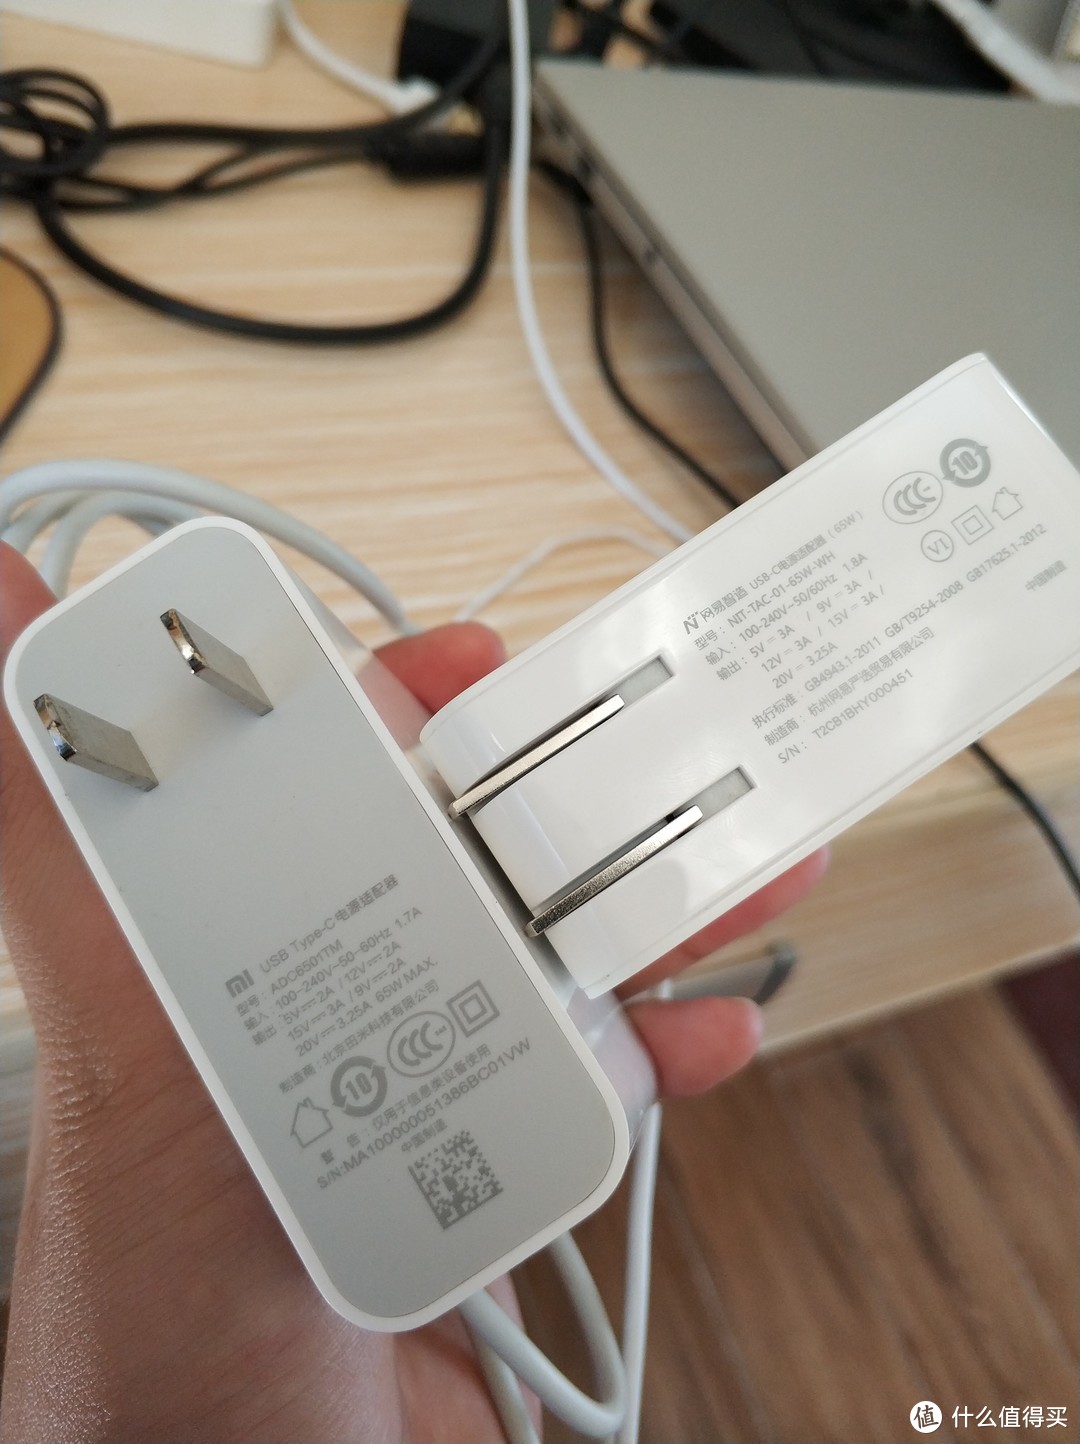 定位才是产品的第一要义：网易智造USB-C电源适配器 对比 小米2口USB充电器